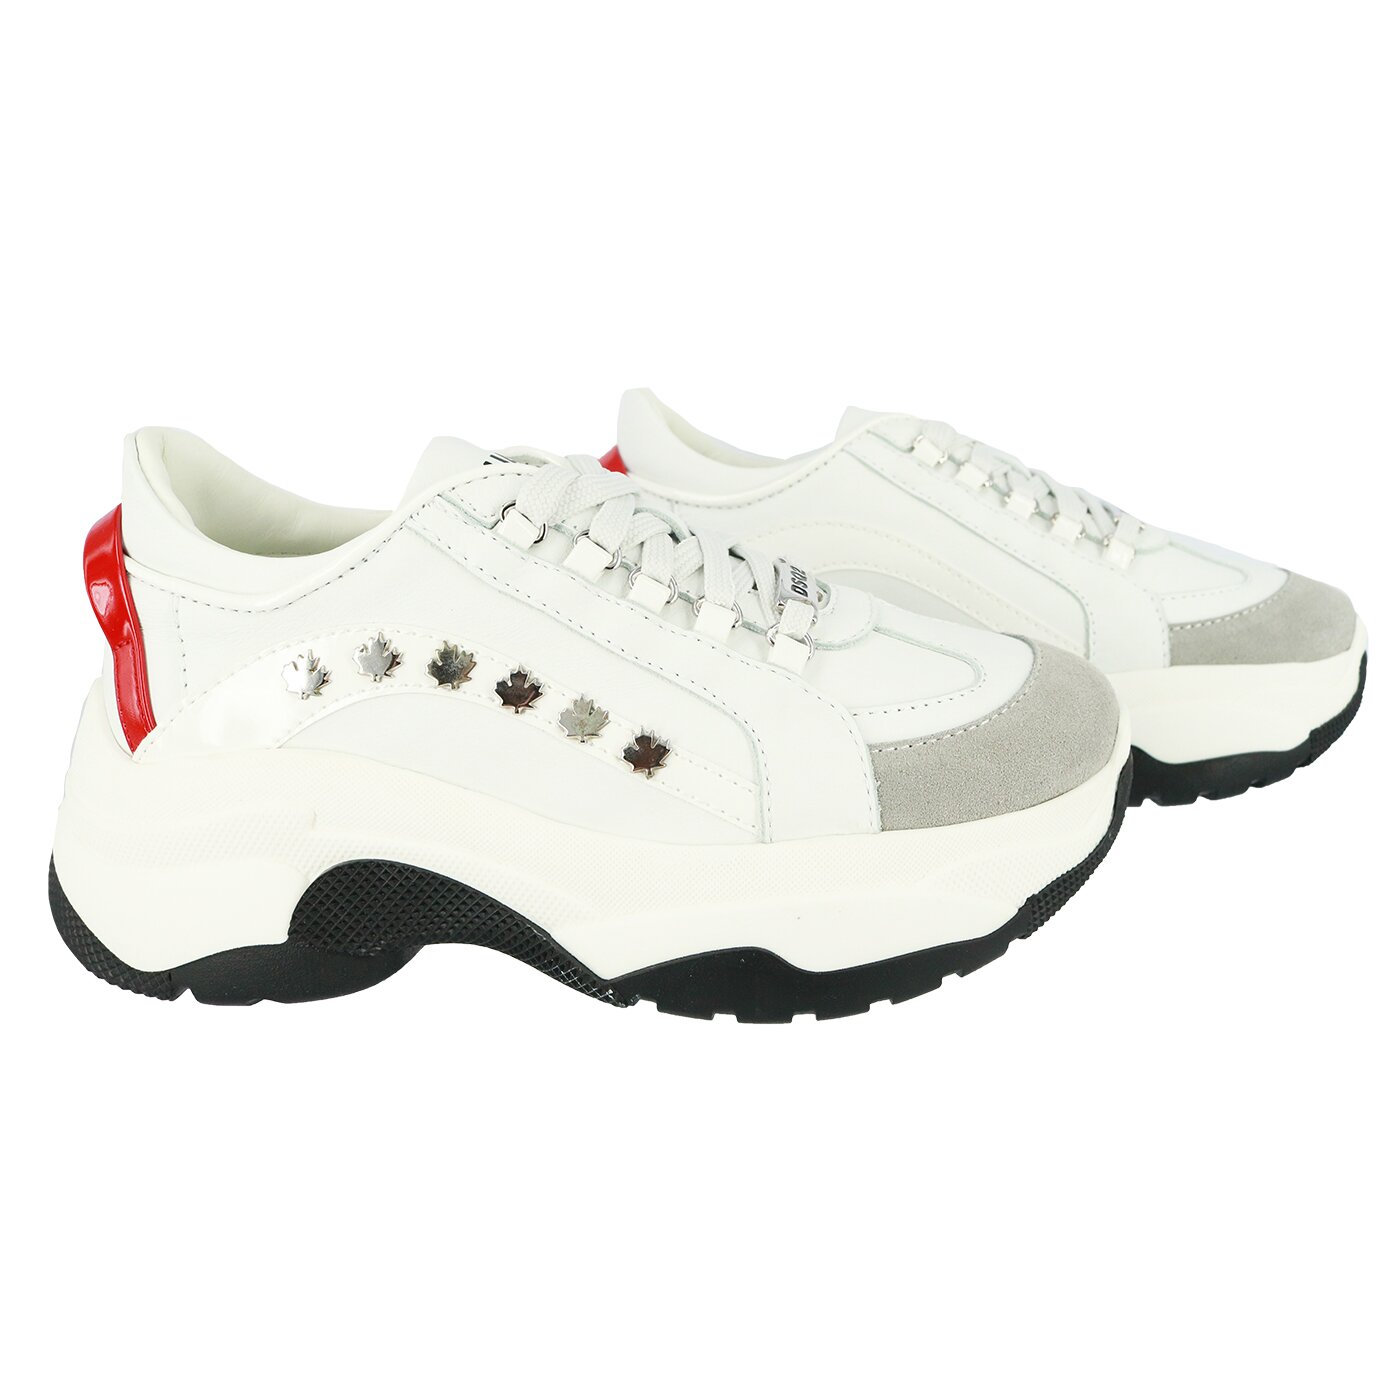 uitlijning Verknald alleen Dsquared-schoenen-65117 bumpy sneaker wit - Fashion for Kids & Teens